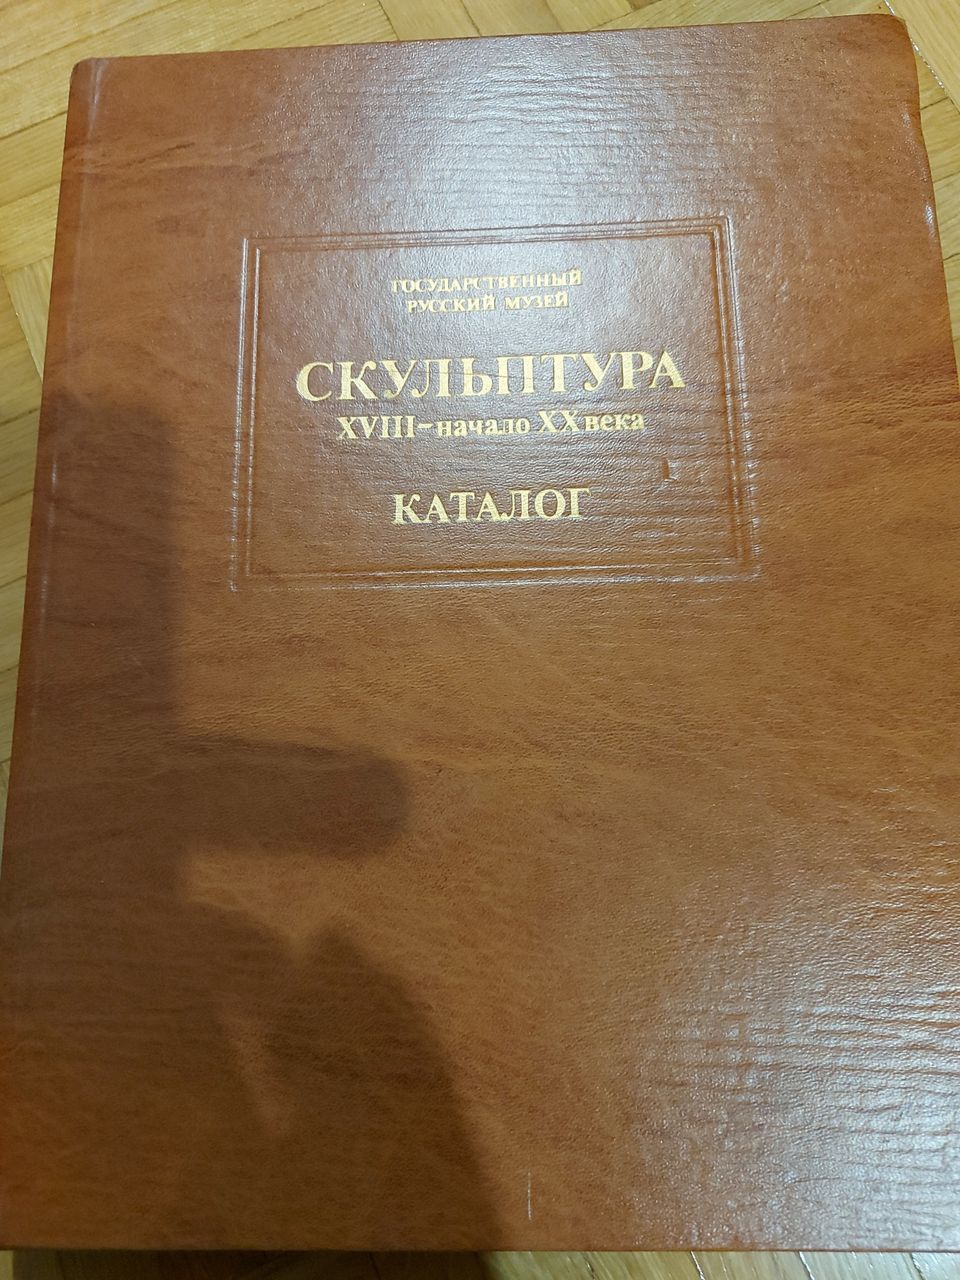 Venäjän kielinen kirja